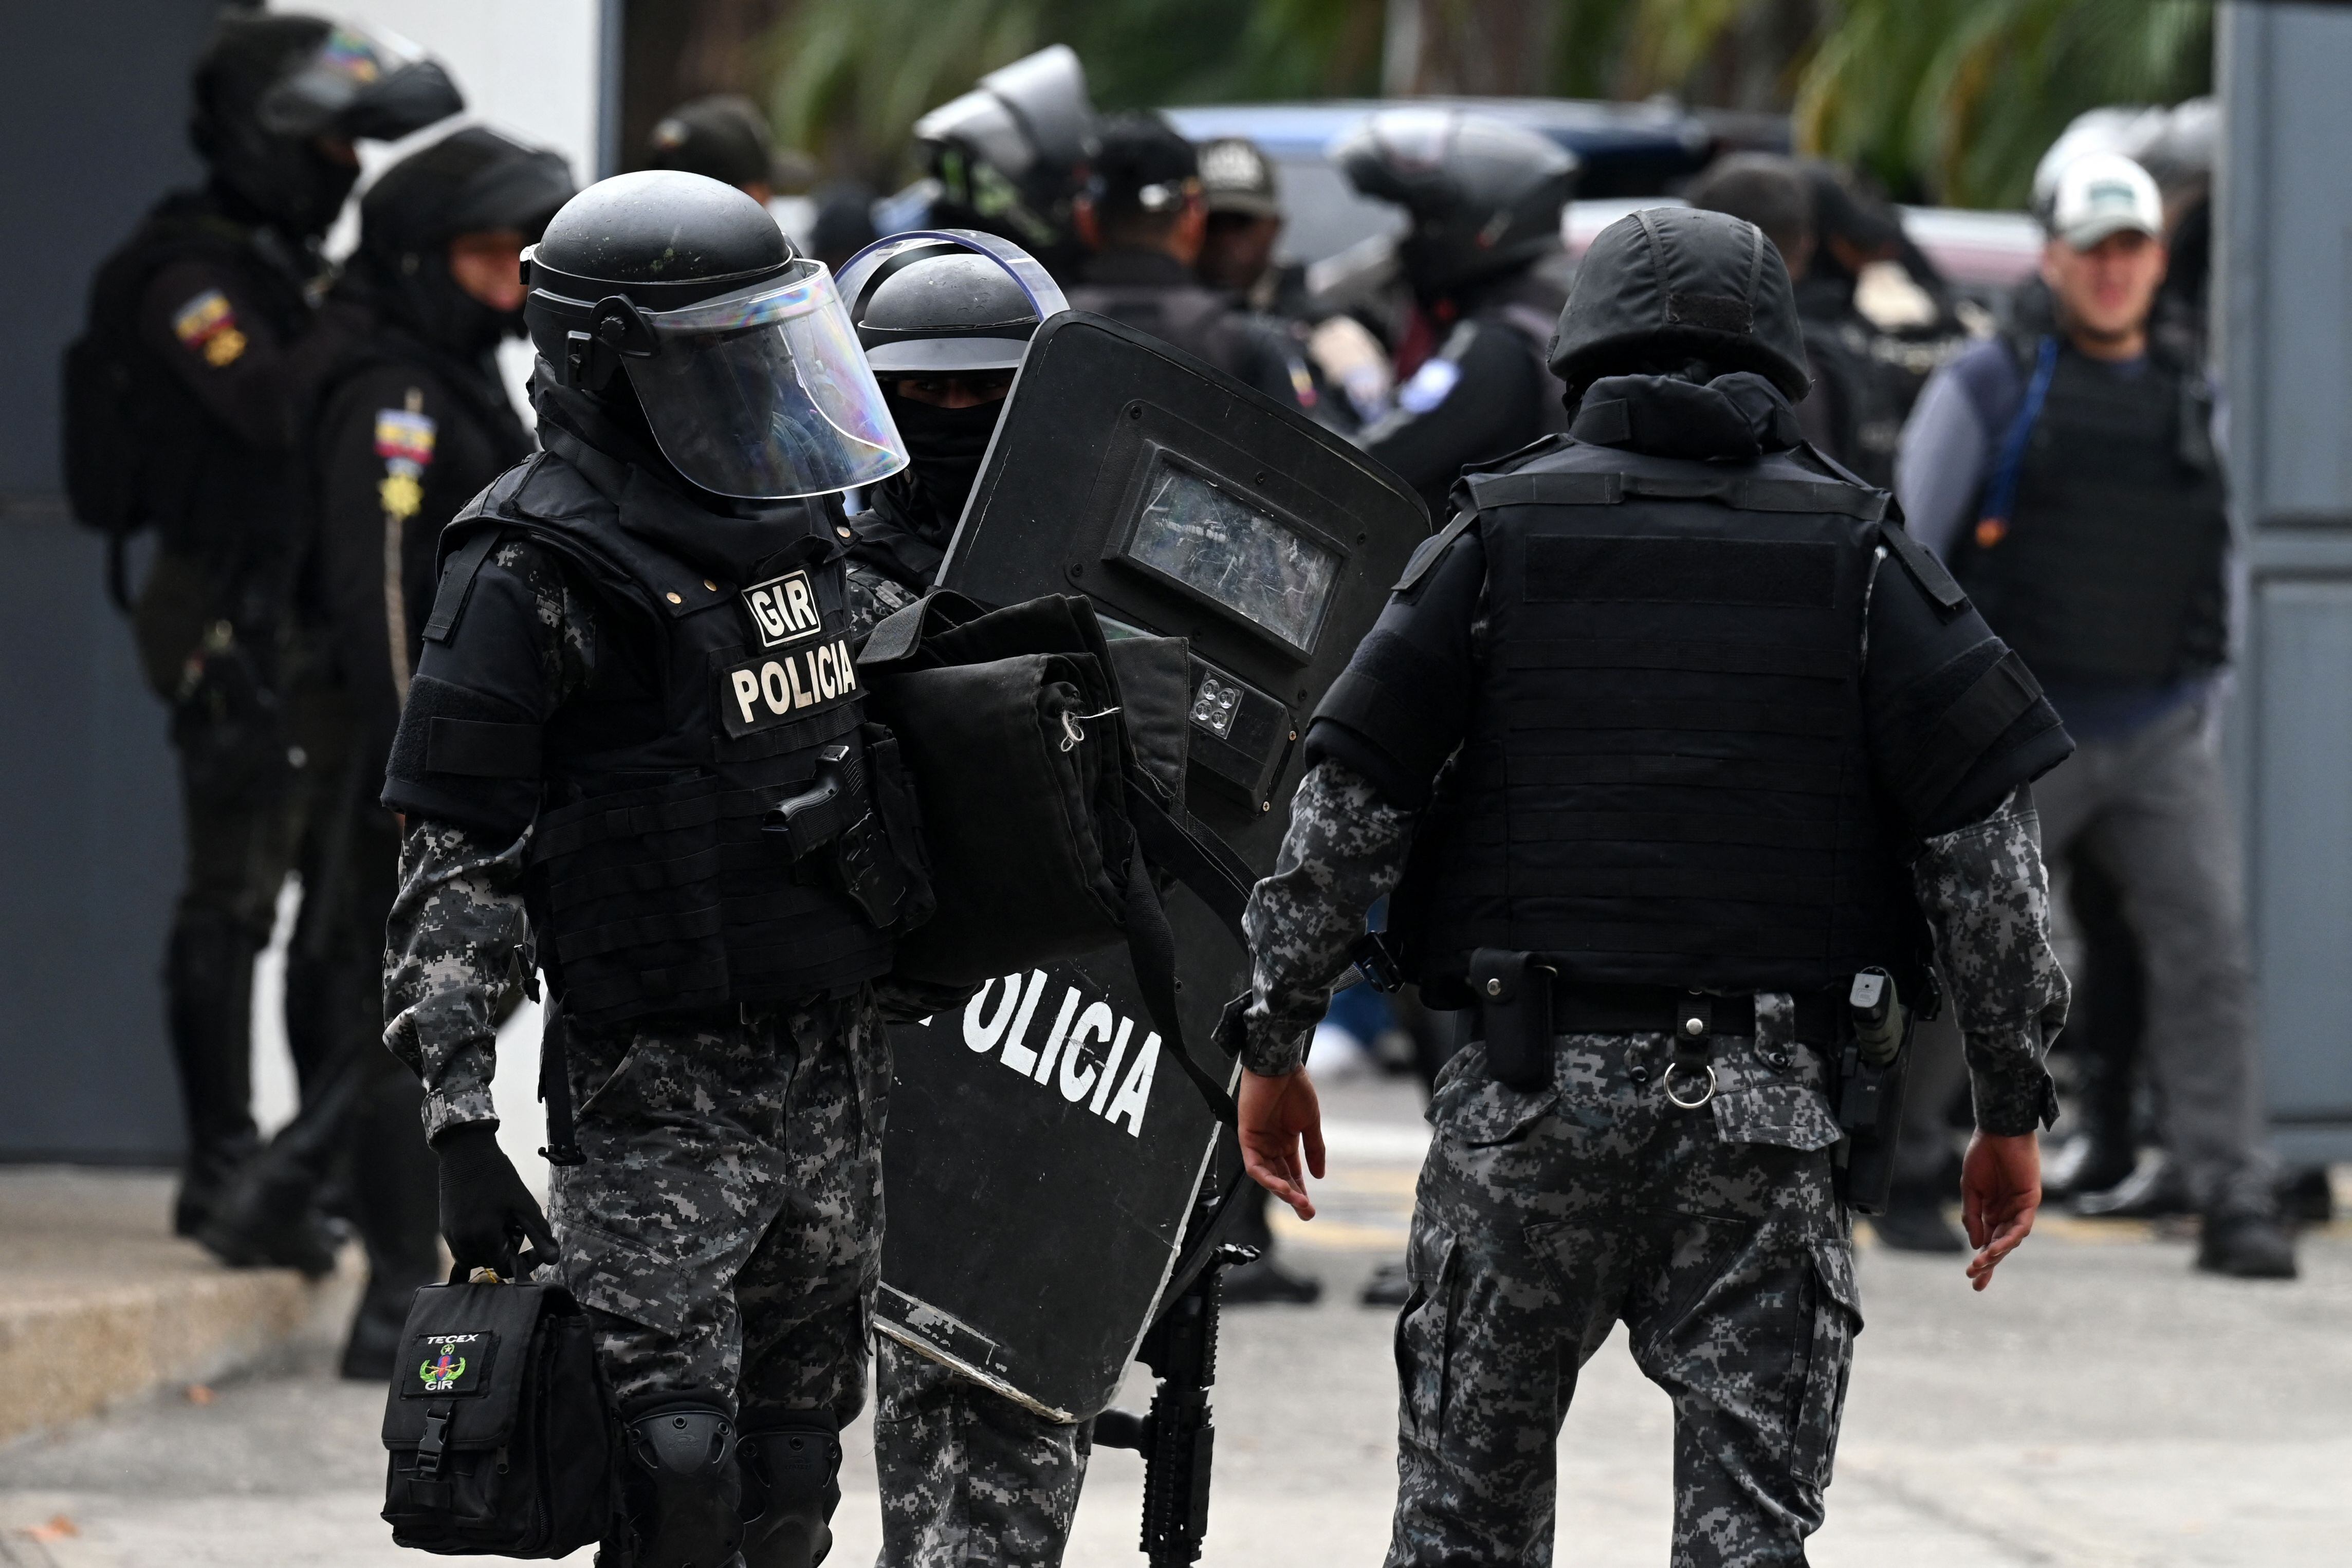 La crisis de violencia ligada al narcotráfico que vive Ecuador llevó a su presidente a declarar un estado de excepción